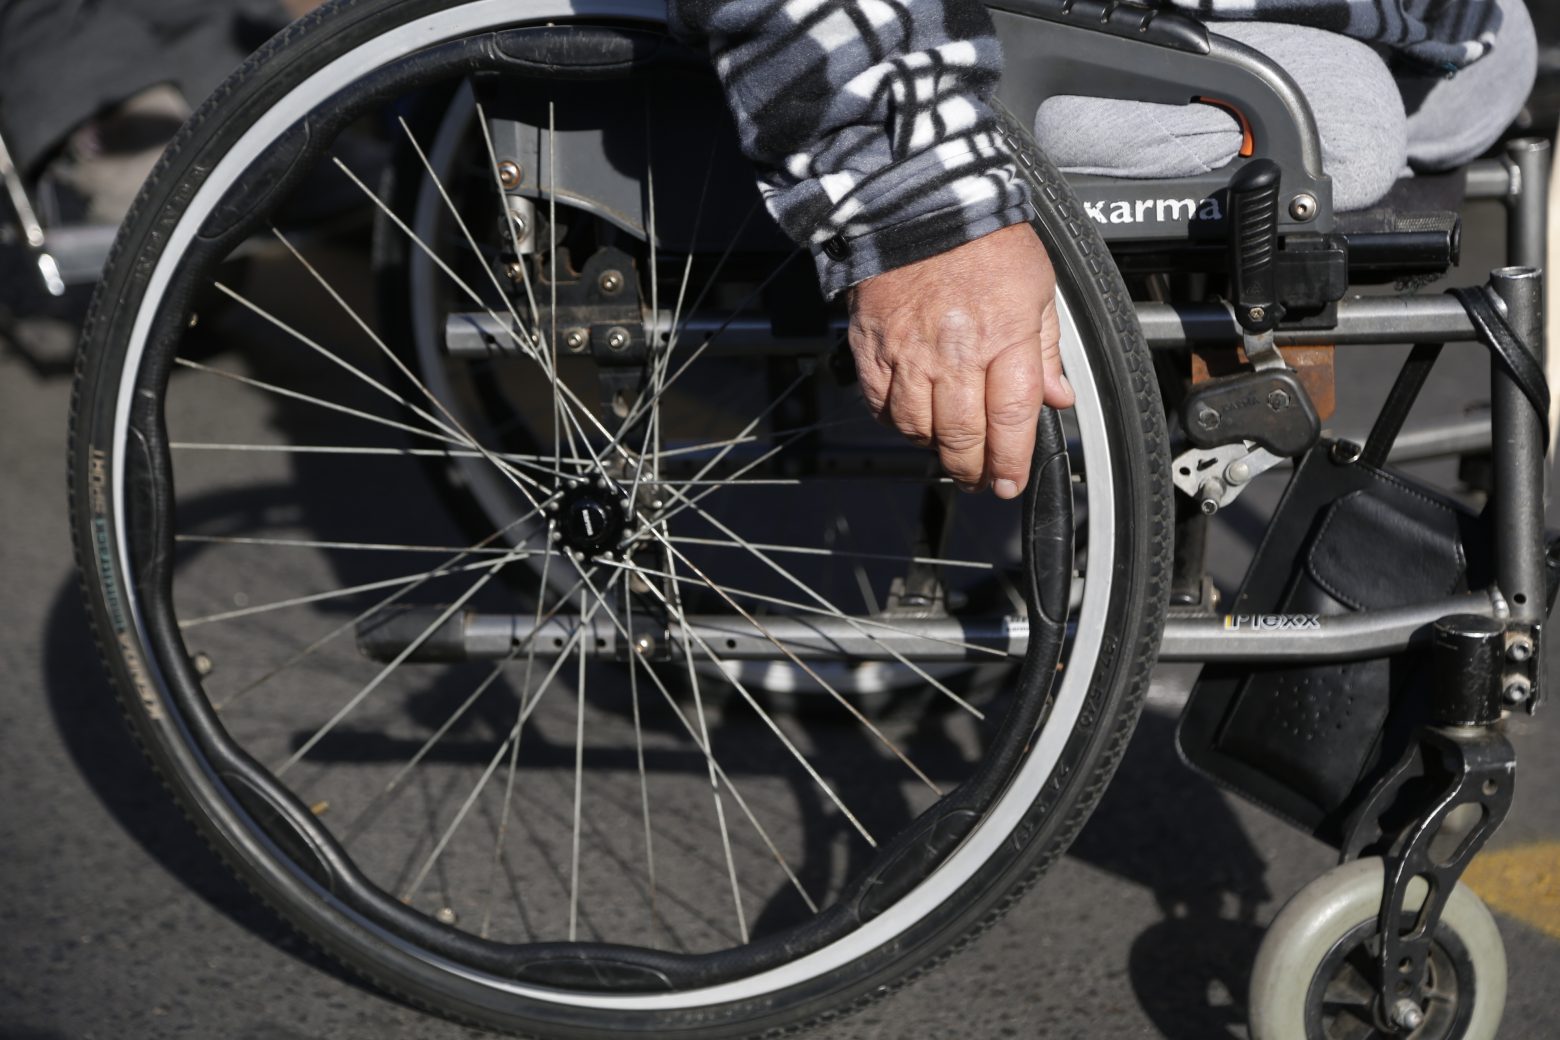 Άτομα με Αναπηρία - Ξεκινά η καταγραφή των δημόσιων κτιρίων για να είναι προσβάσιμα σε όλους